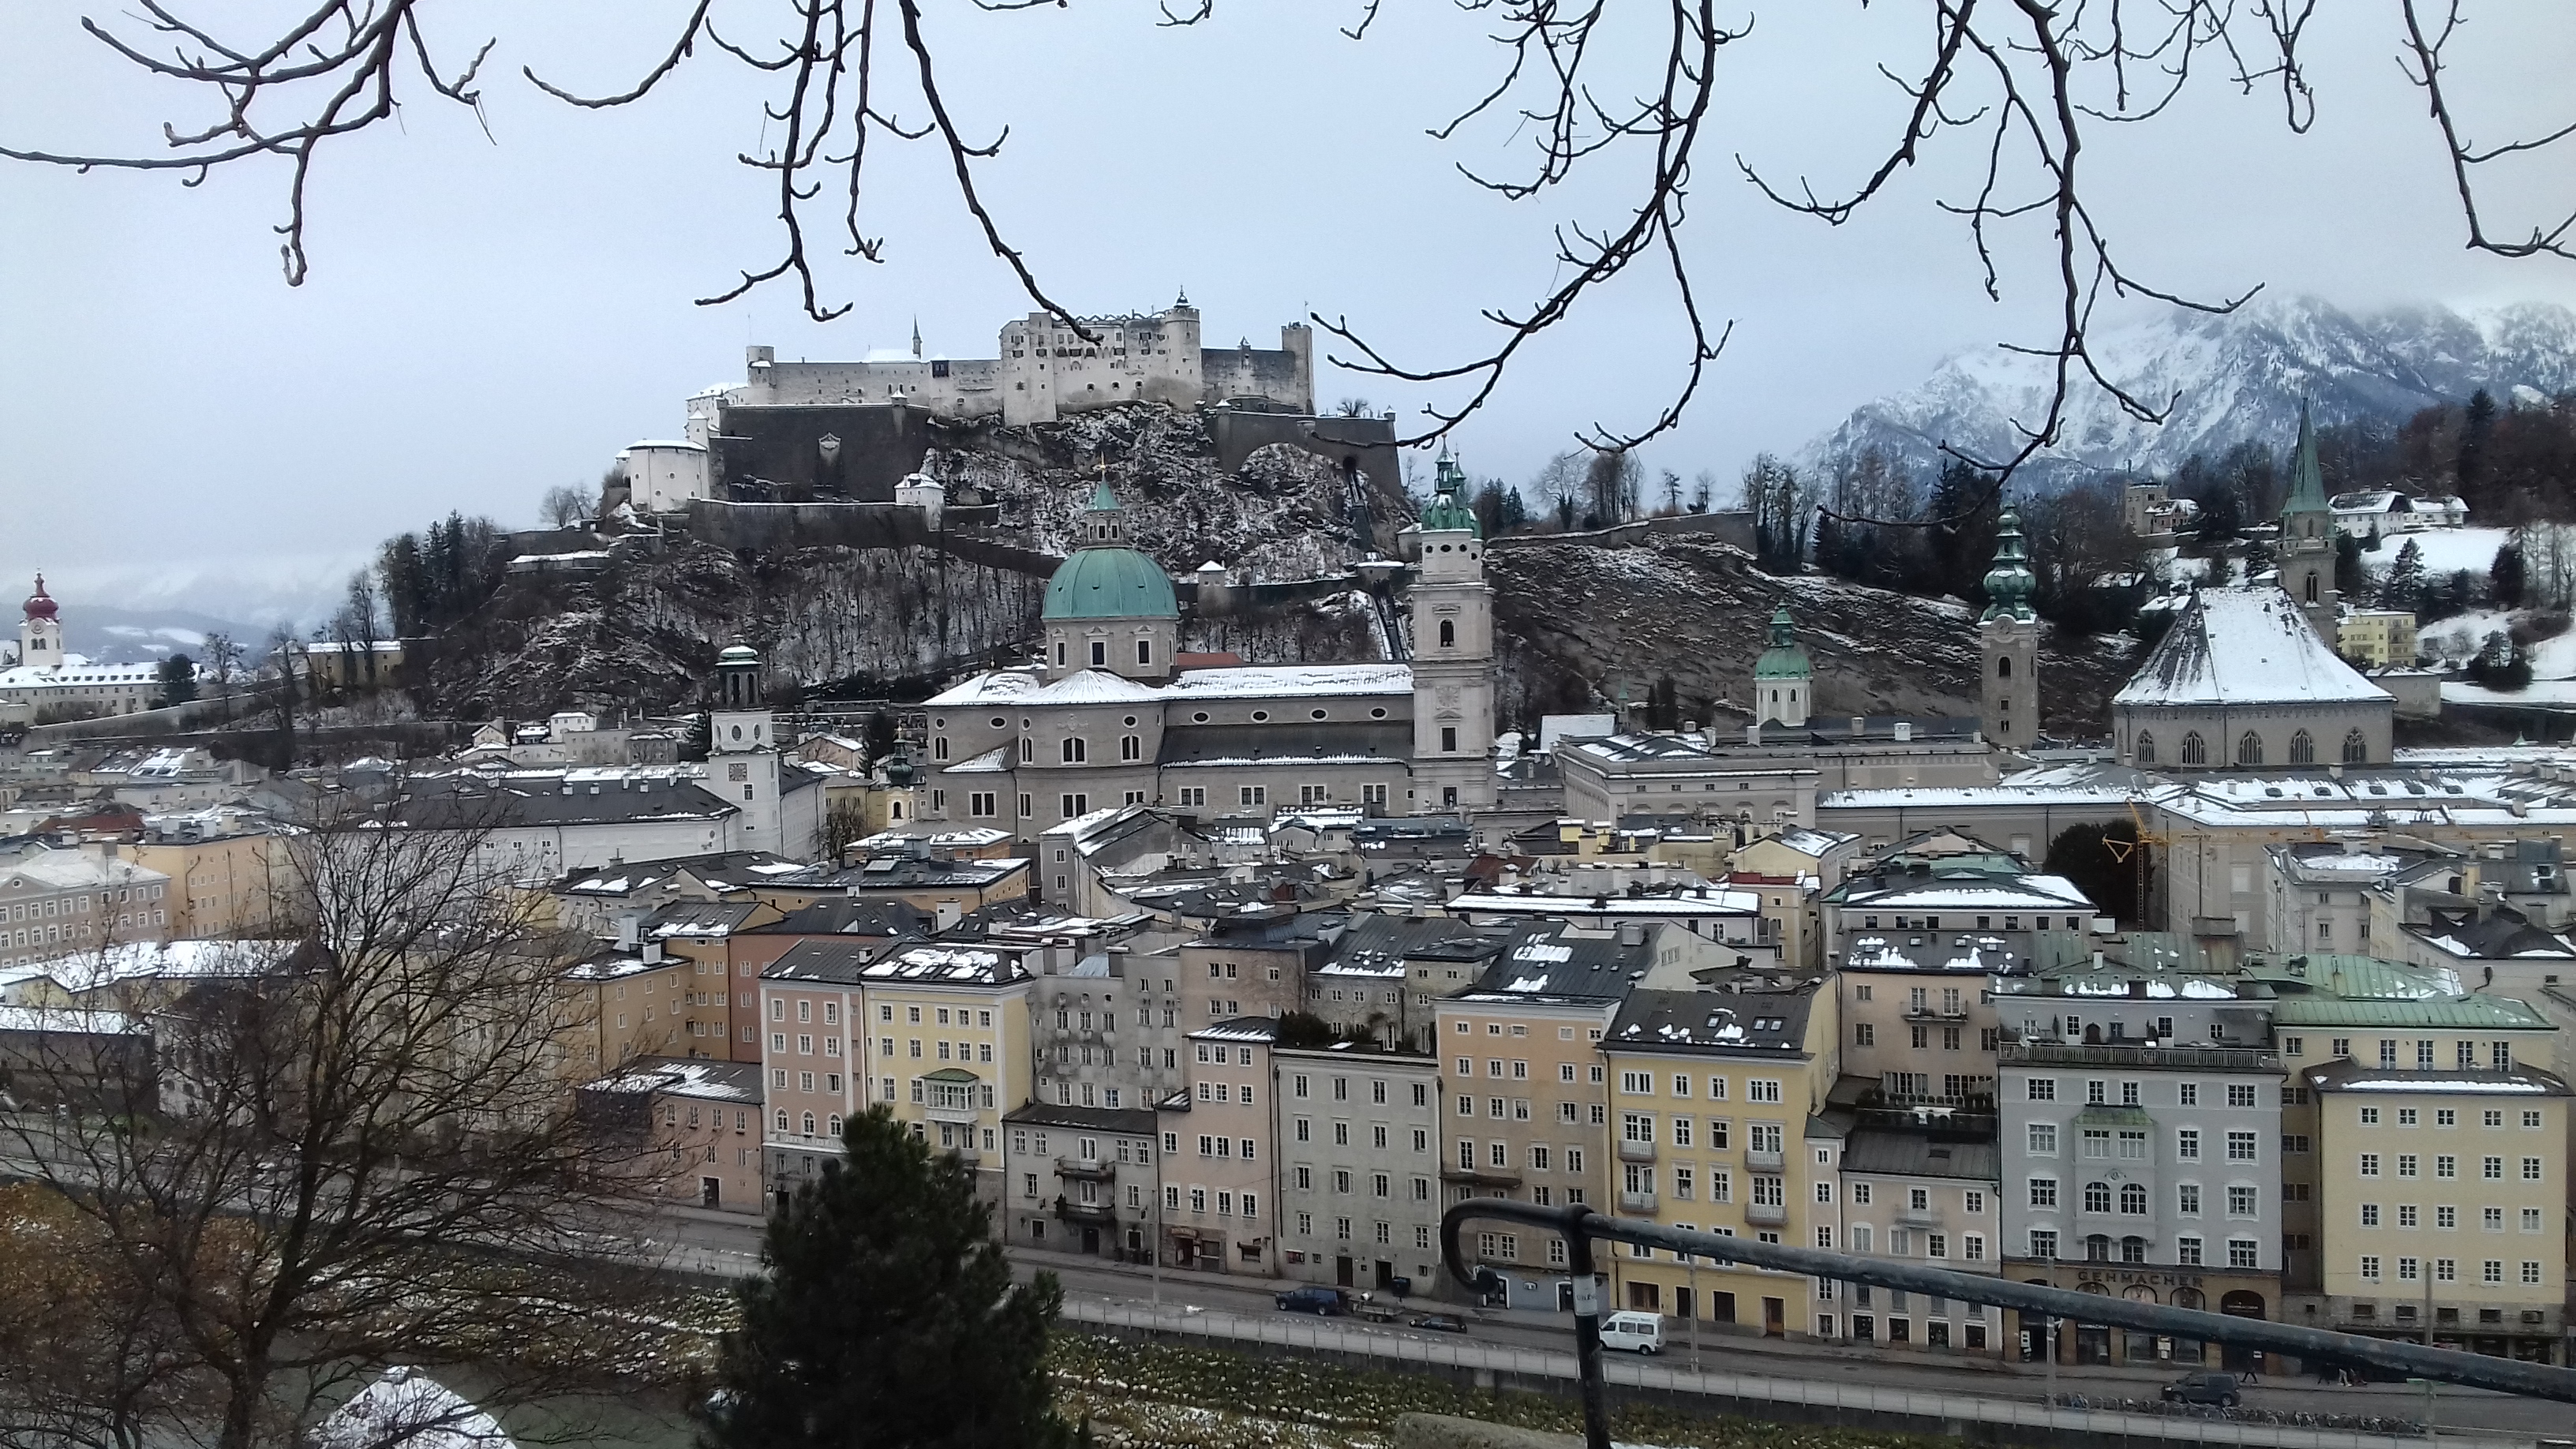 First Meeting in Salzburg